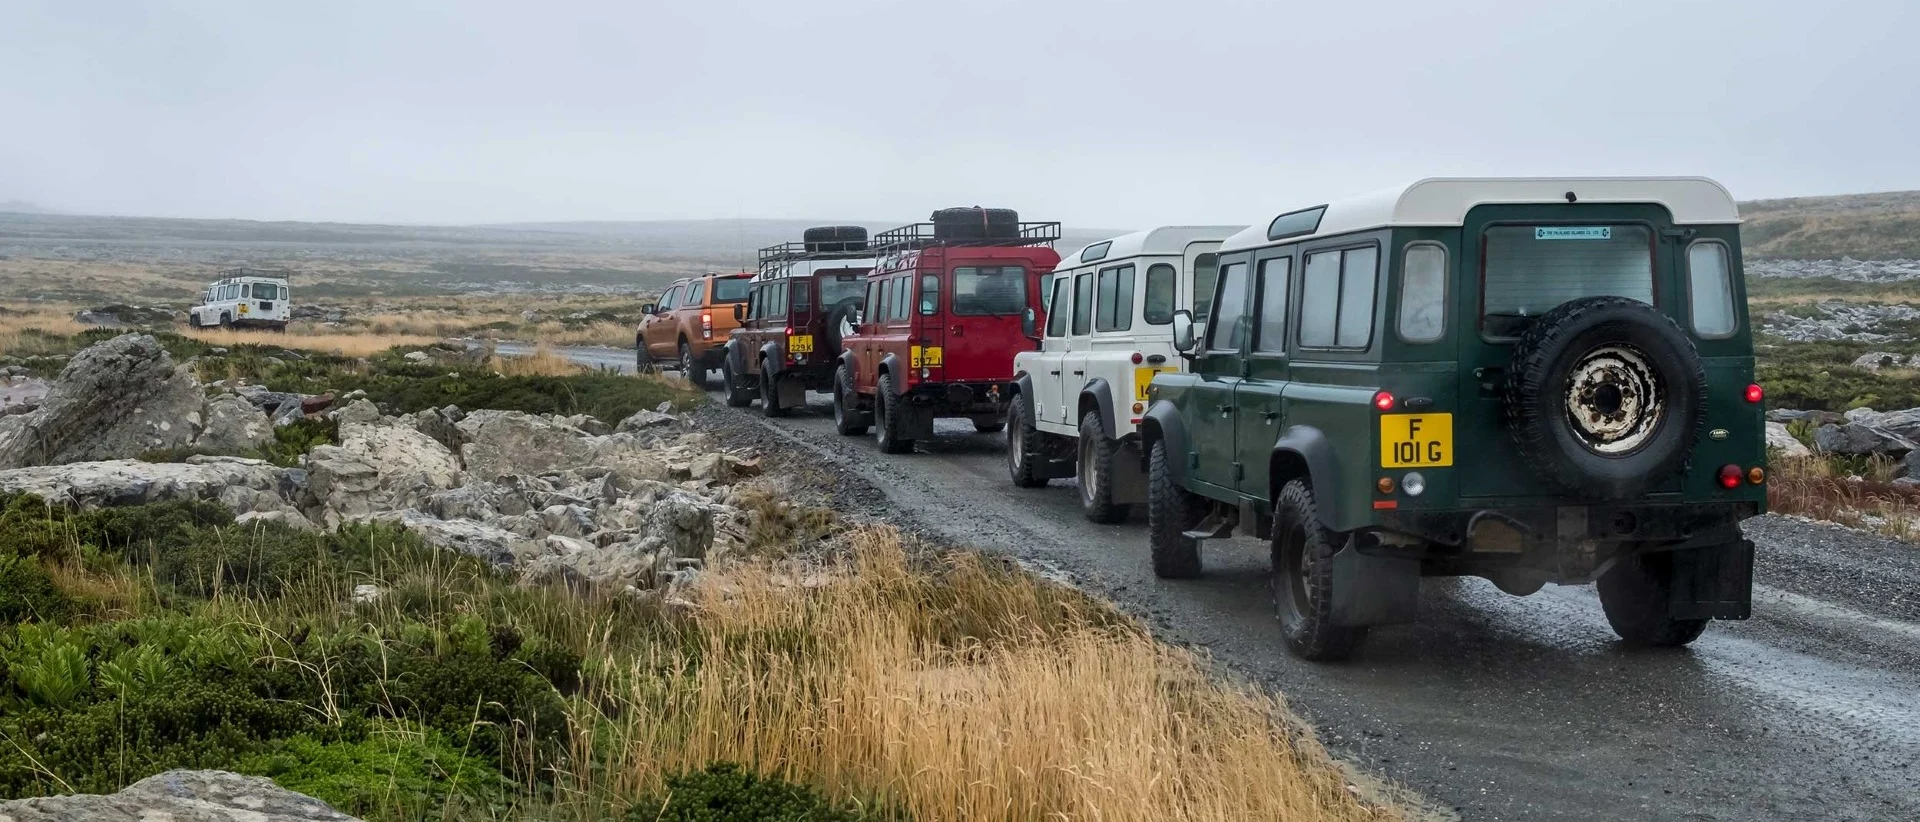 Port Stanley: Falklandsøernes kronjuvel